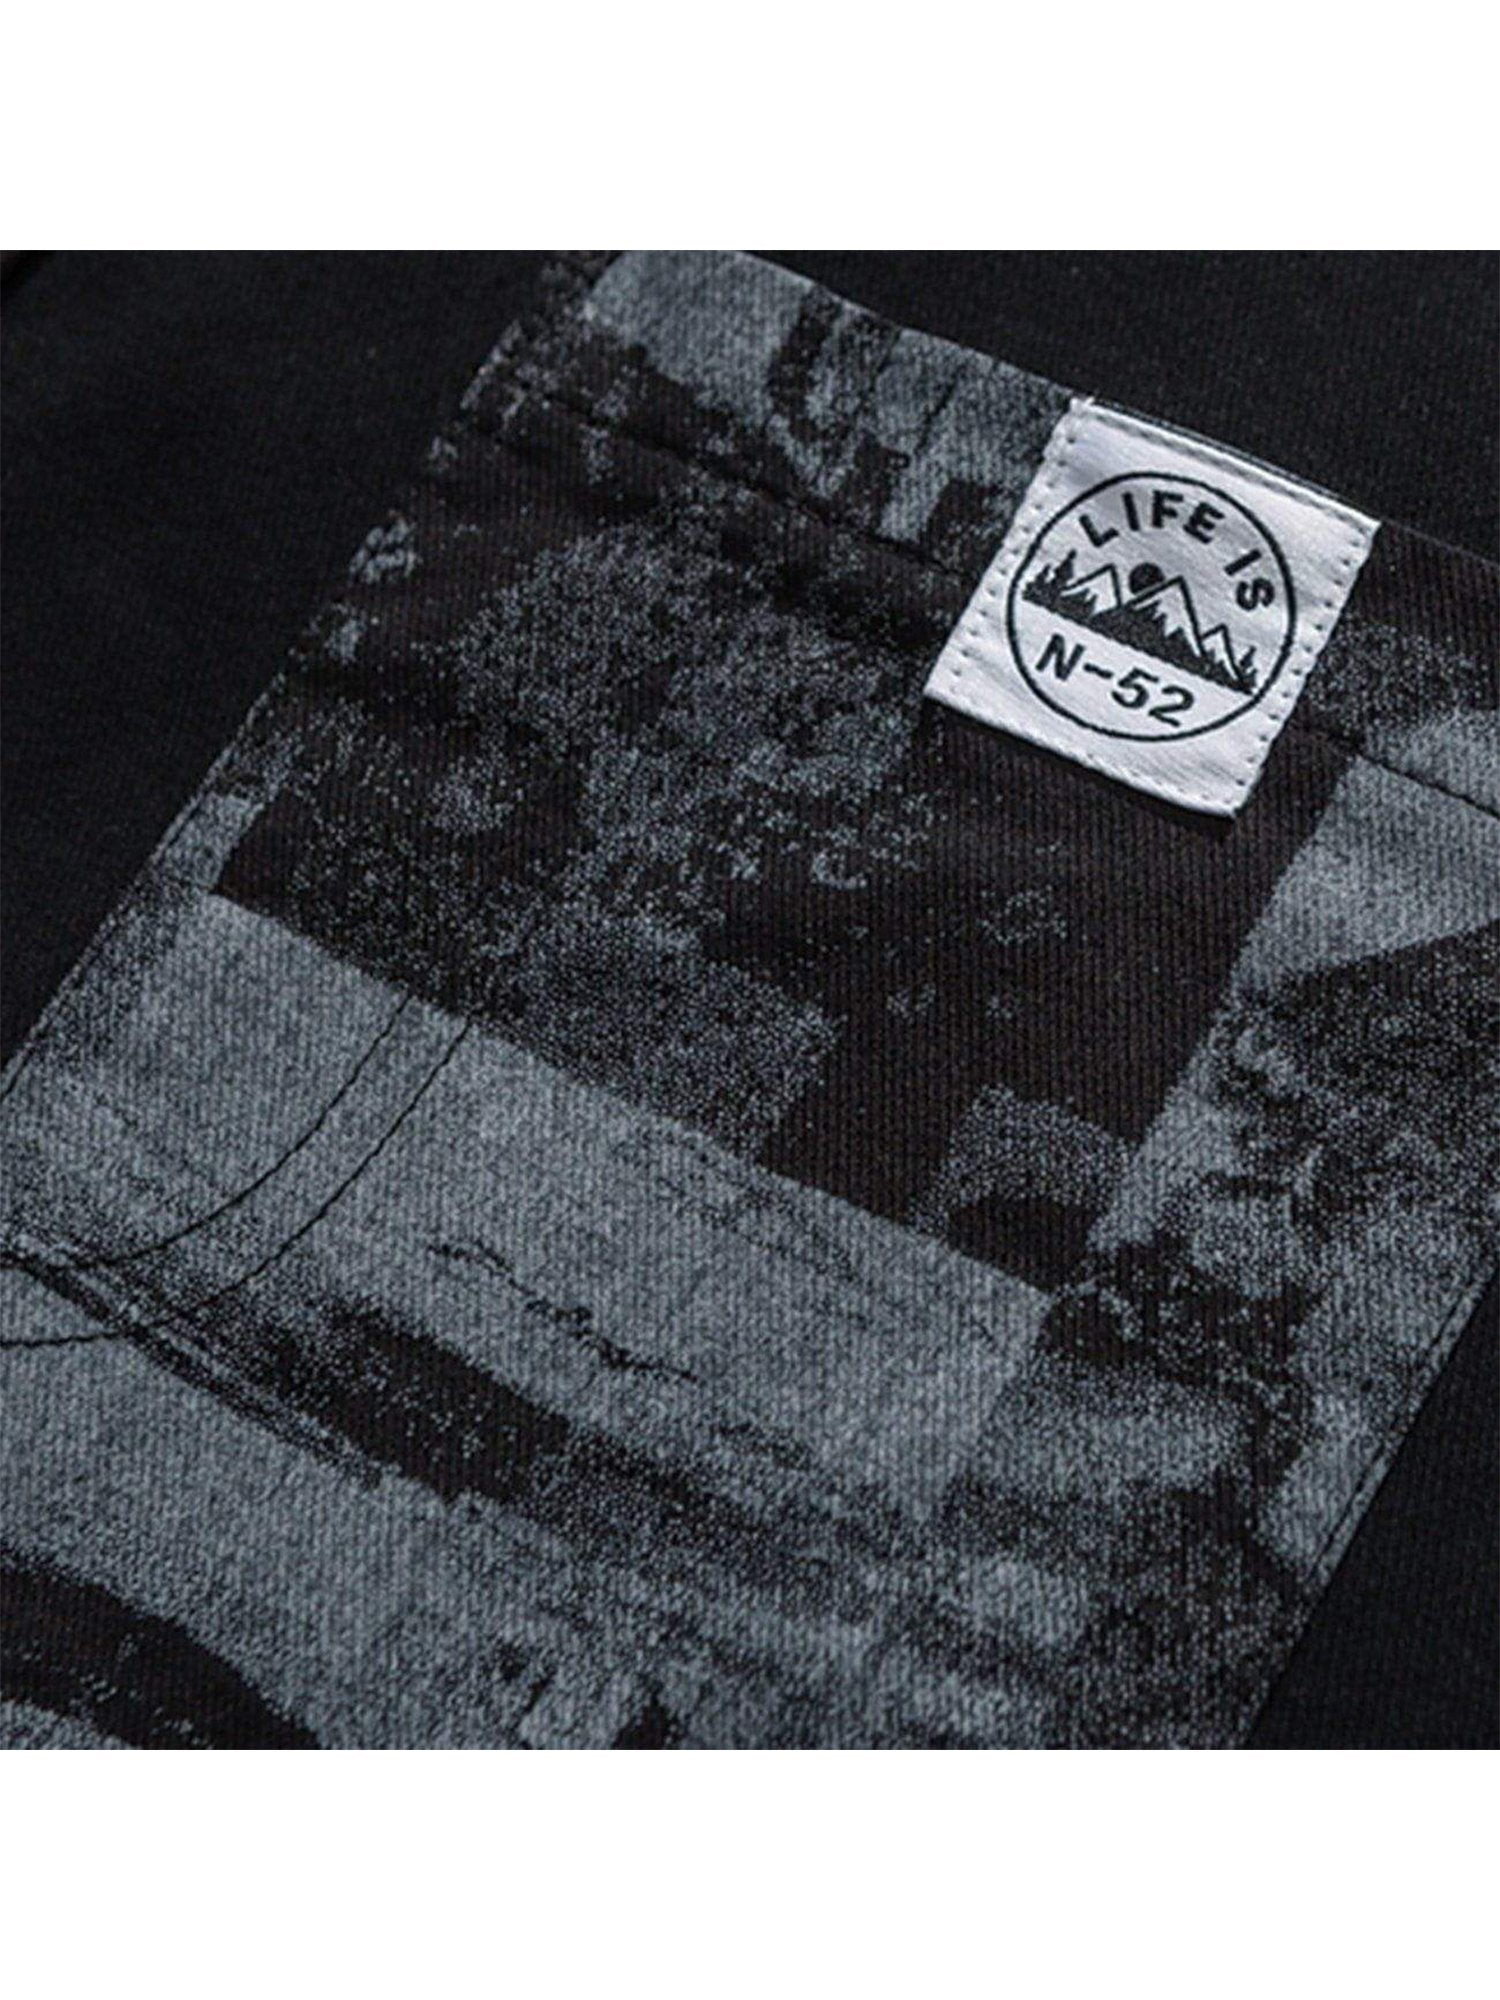 JUSTNOTAG Vintage Printed Panel Short Sleeve Shirts